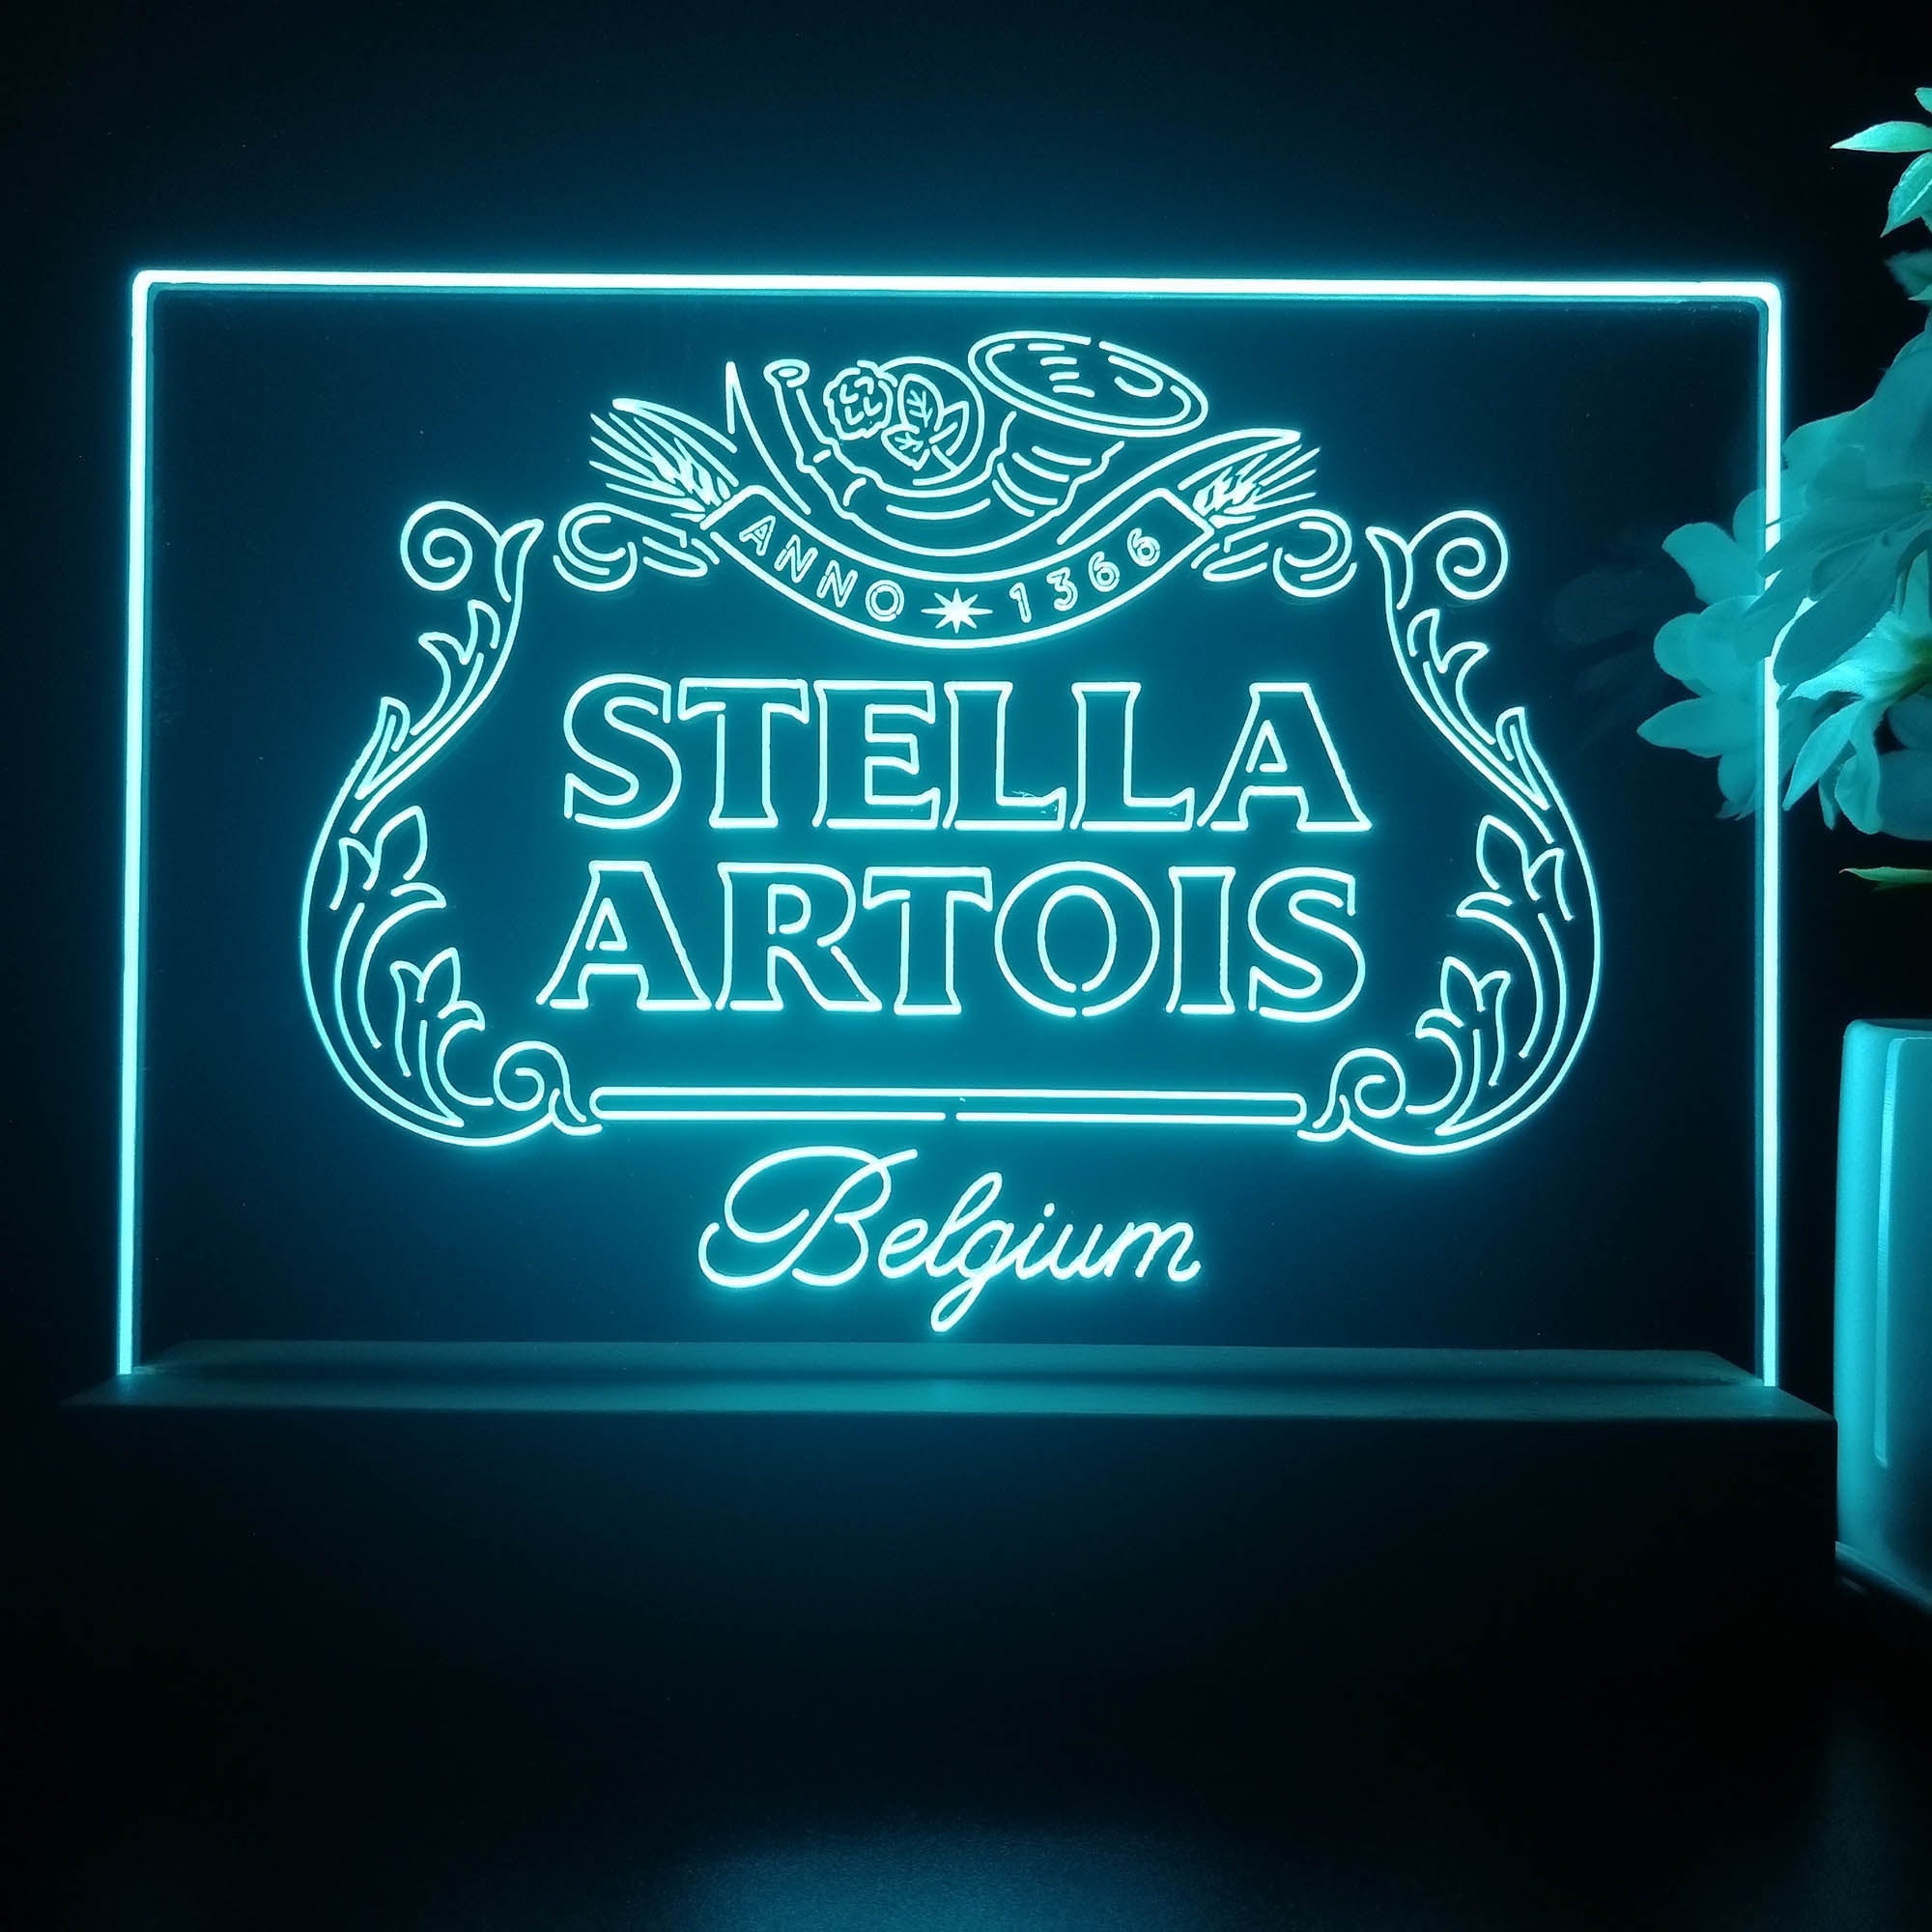 Stella Artois Belgium Neon Sign Pub Bar Lamp